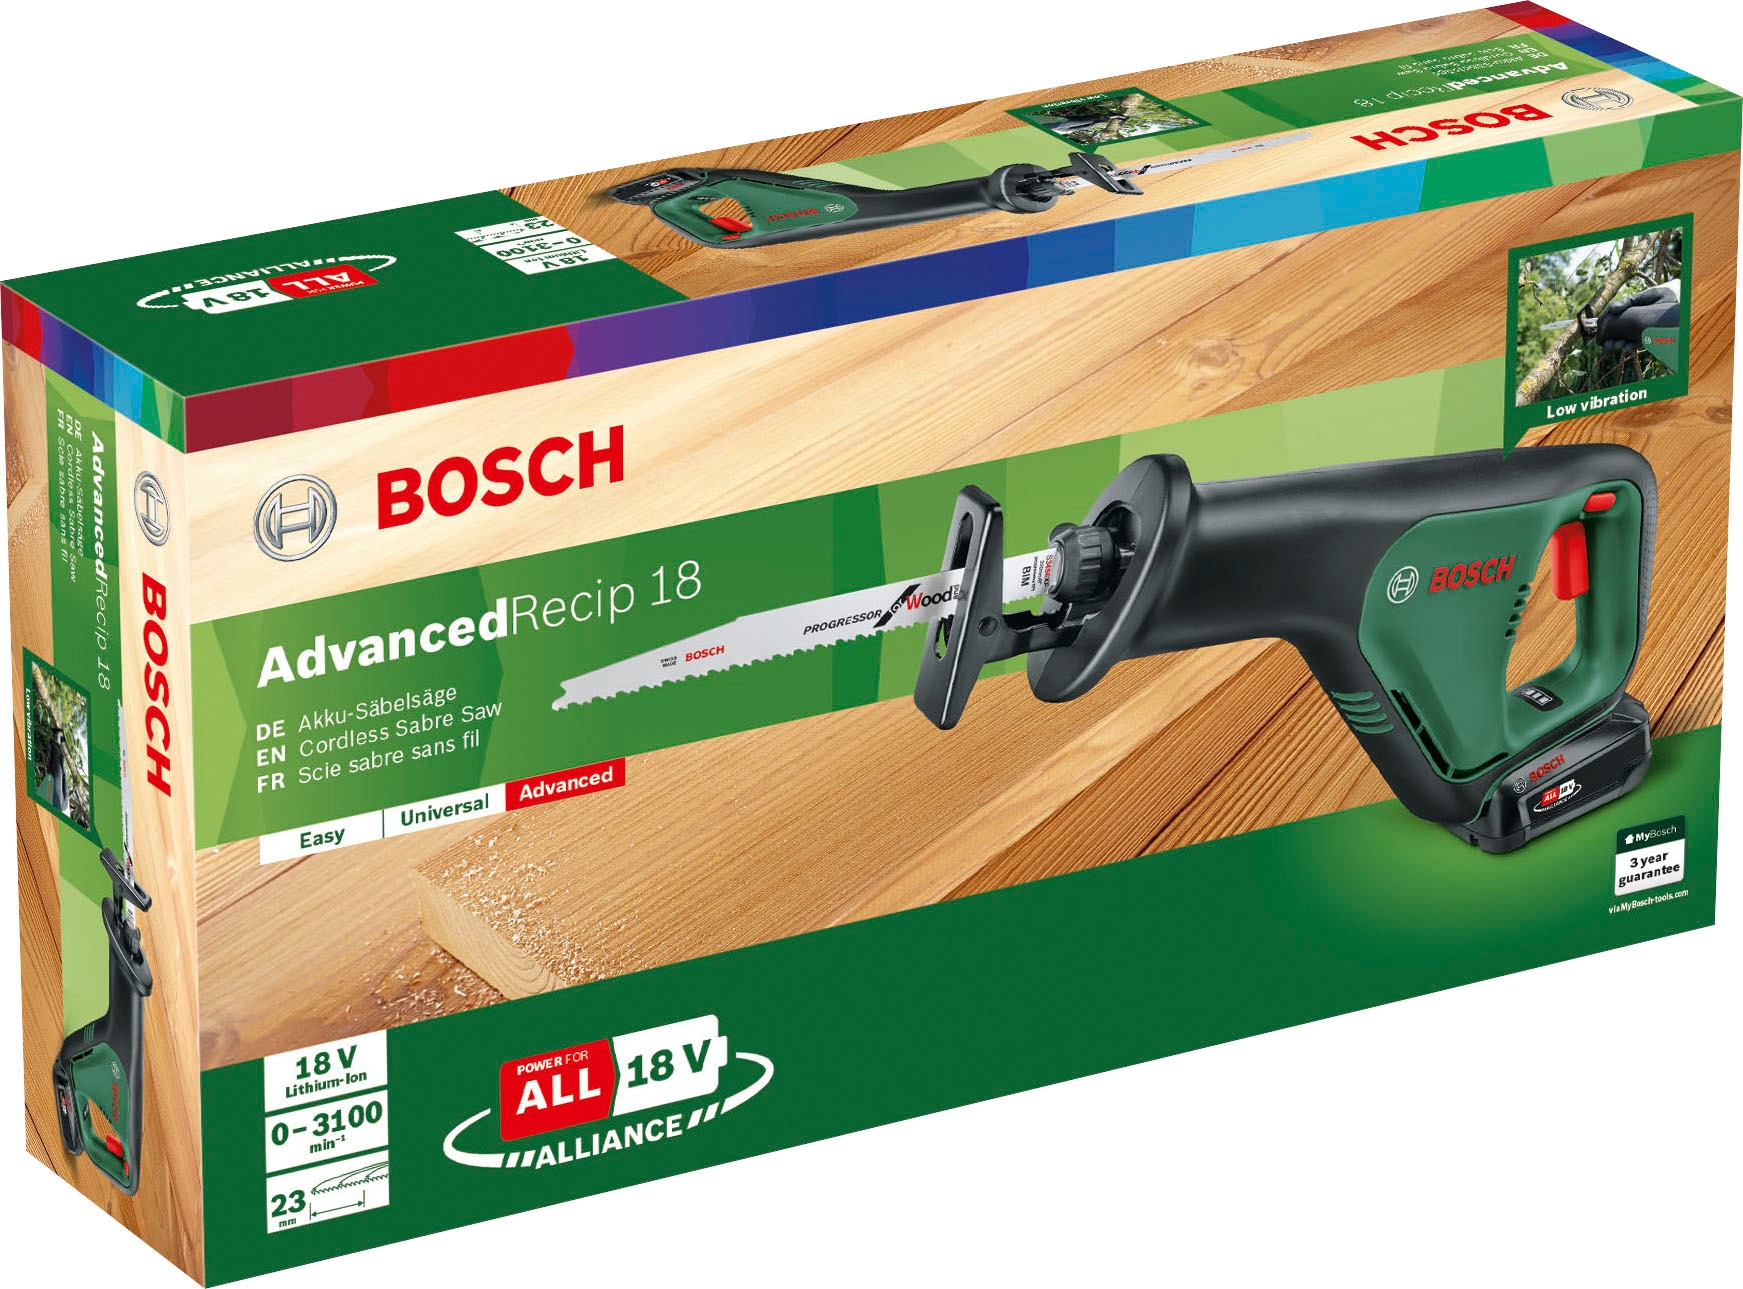 Bosch Home & Garden Akku-Säbelsäge »AdvancedRecip 18«, inkl. Akku und Ladegerät